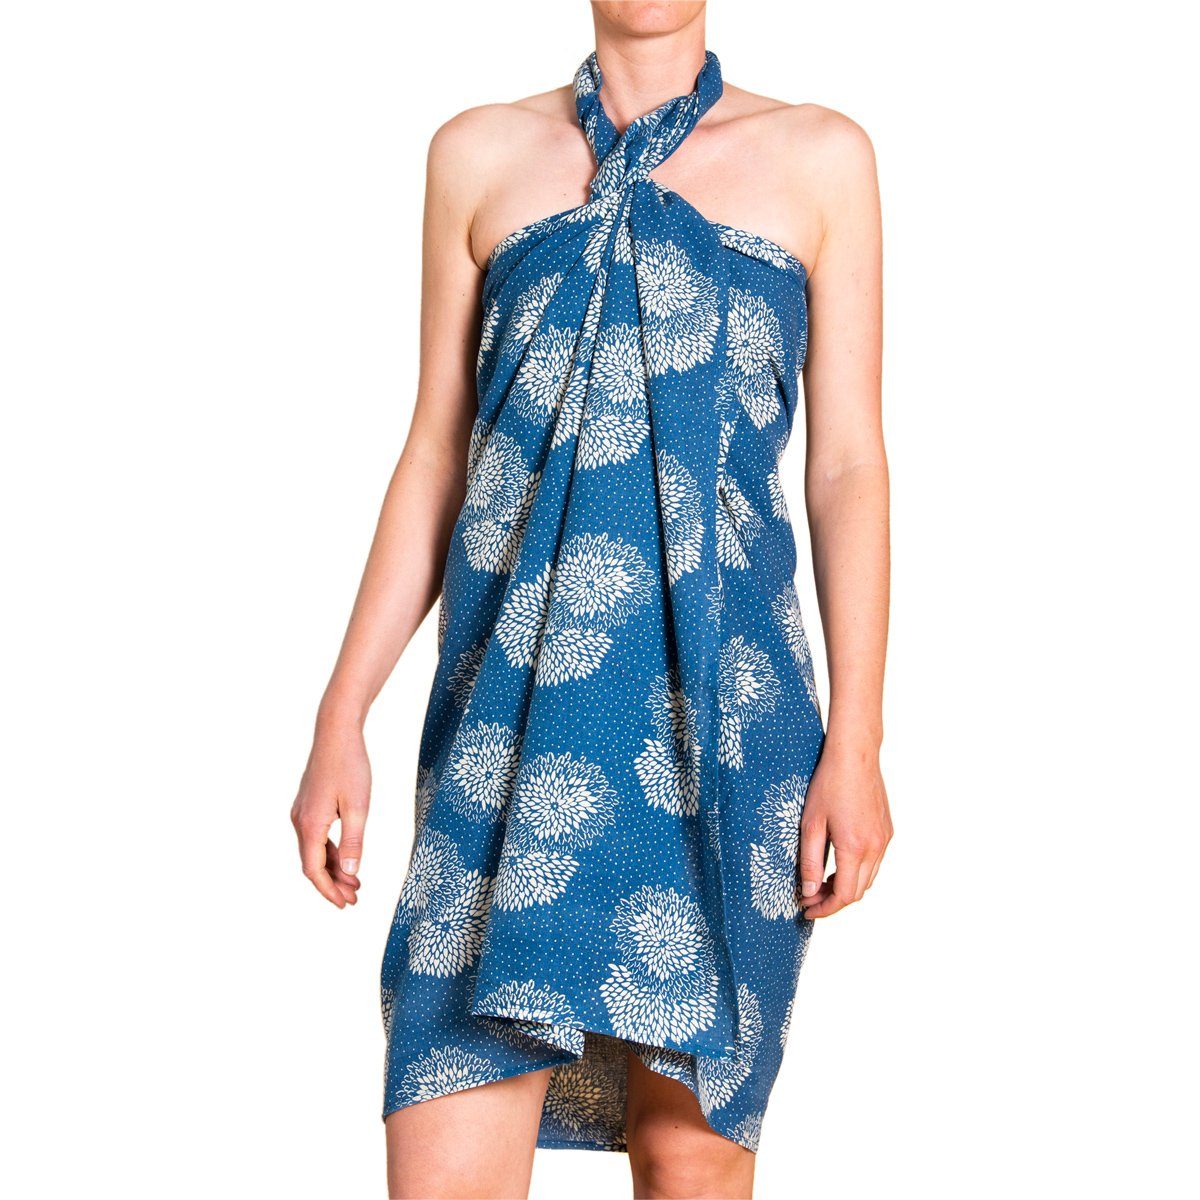 PANASIAM Pareo Sarong Baumwolle Indigo Bikini Cover-up oder Wickeltuch Strandtuch, auch als Schal oder großes Halstuch oder Schultertuch tragbar Überwurf Chrysantheme